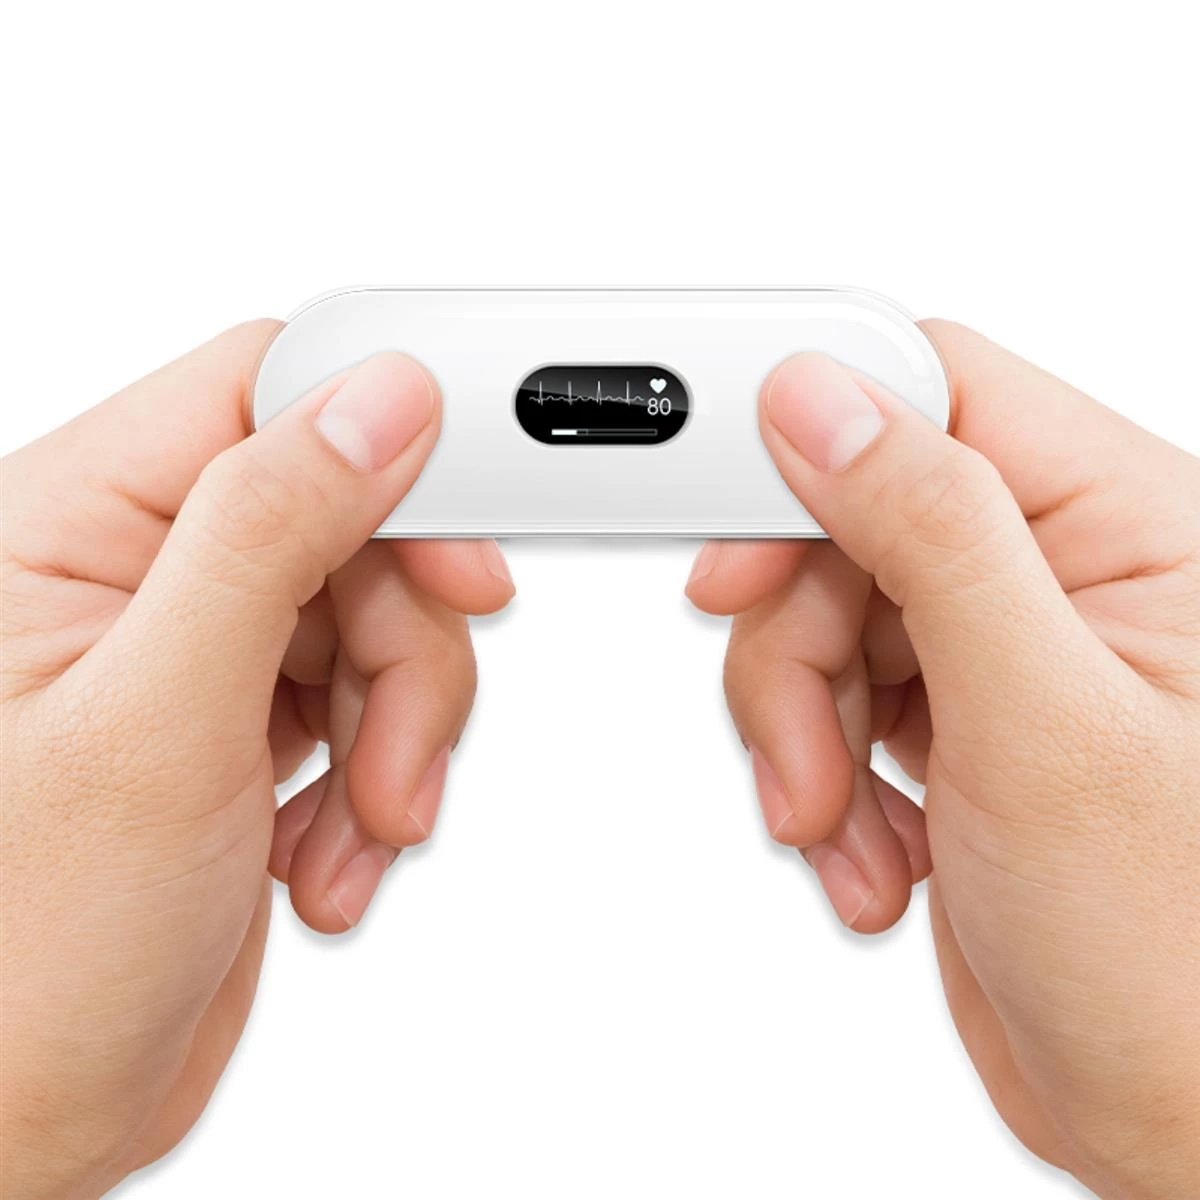 Das weiße Lepu DuoEKG, mit kleinem OLED-Display wird zwischen Daumen und Zeigefinger beider Hände gehalten und führt gerade eine Messung durch.